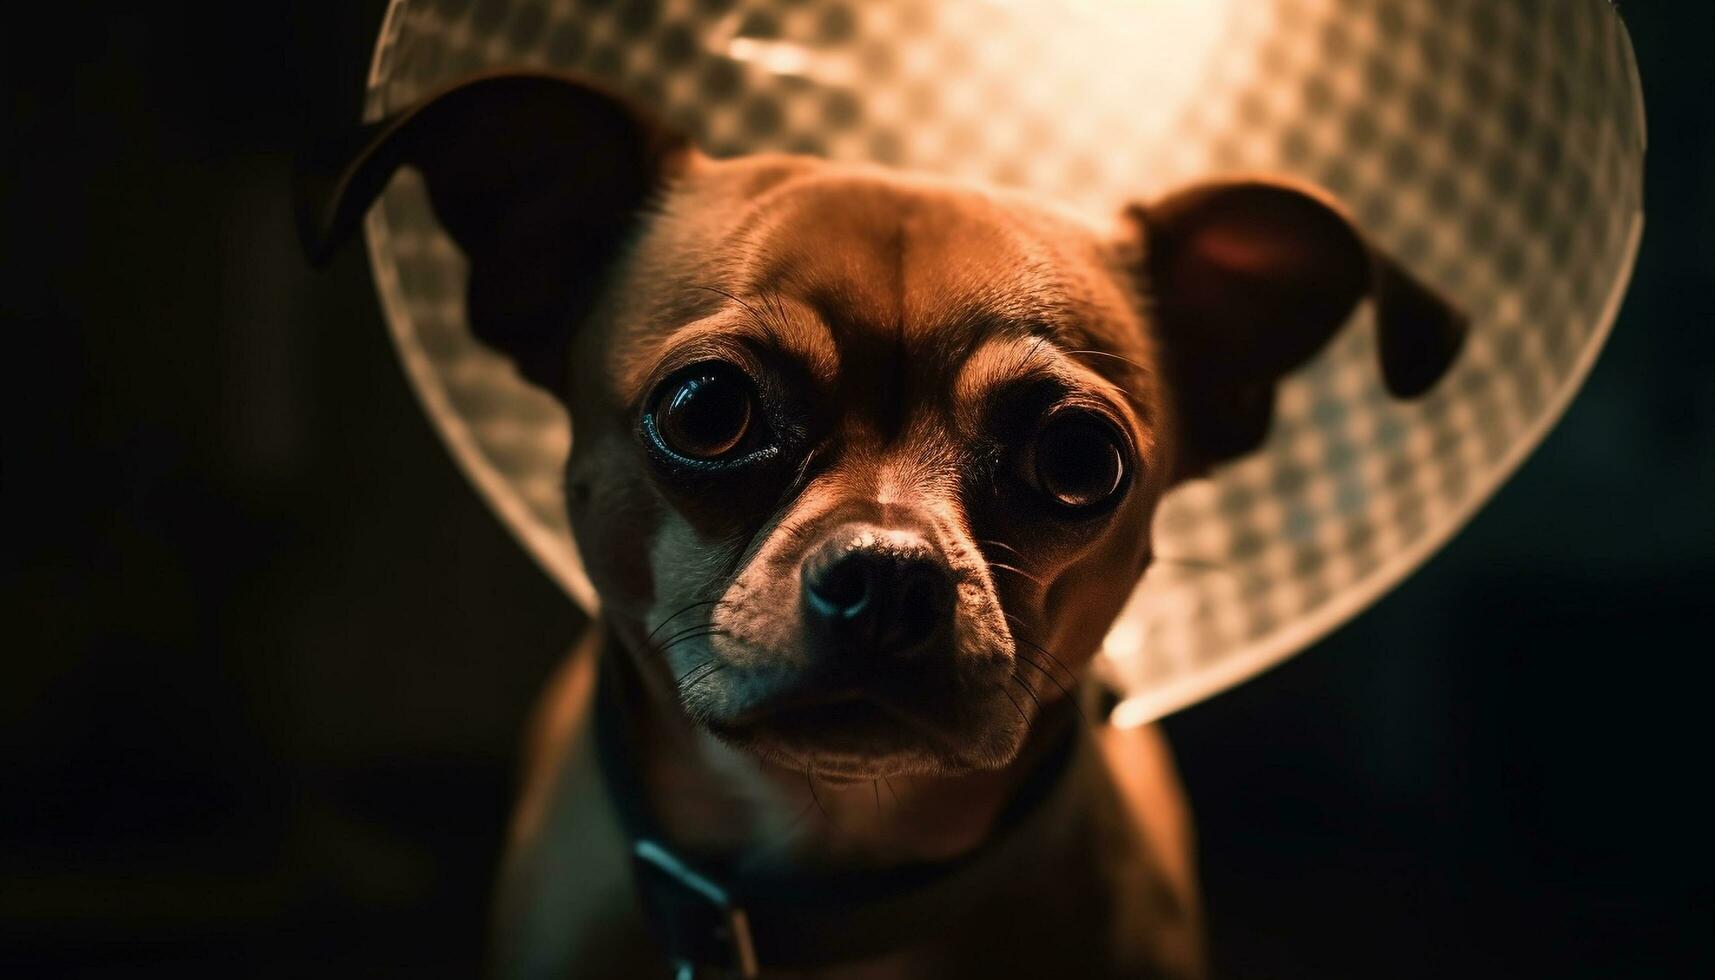 Cute purebred bulldog looking at camera indoors generated by AI photo